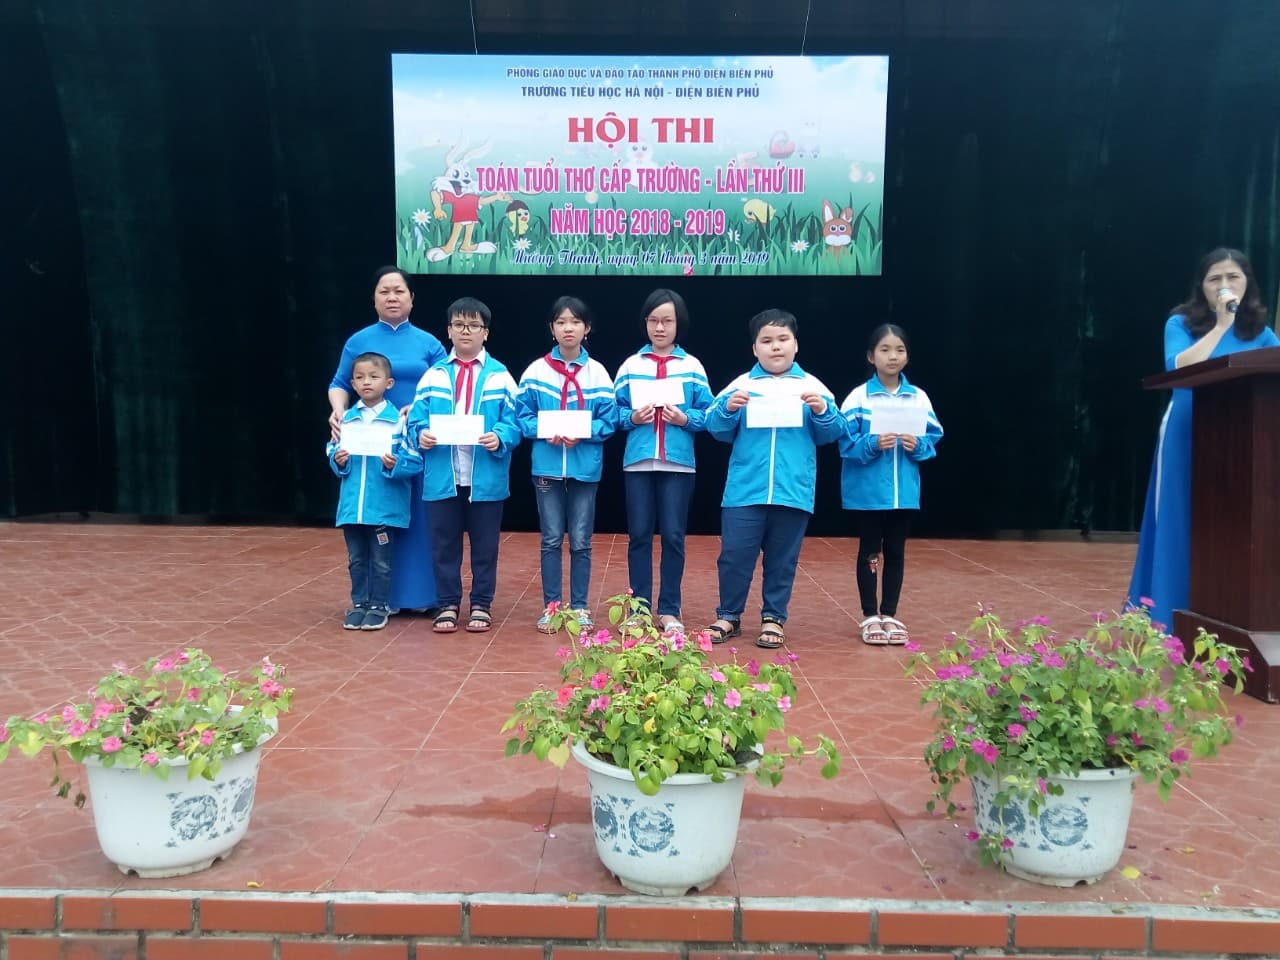 Trường Tiểu học Hà Nội-Điện Biên Phủ tổ chức “Giao lưu Olympic Toán tuổi thơ cấp trường” cho học sinh năm học 2018-2019.